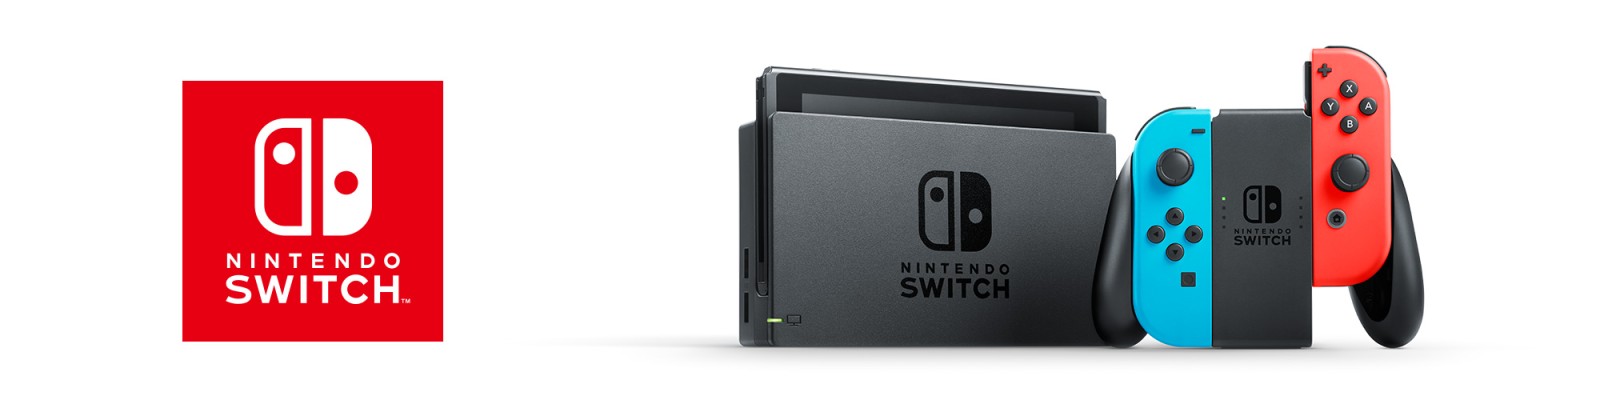 Support für Nintendo Switch